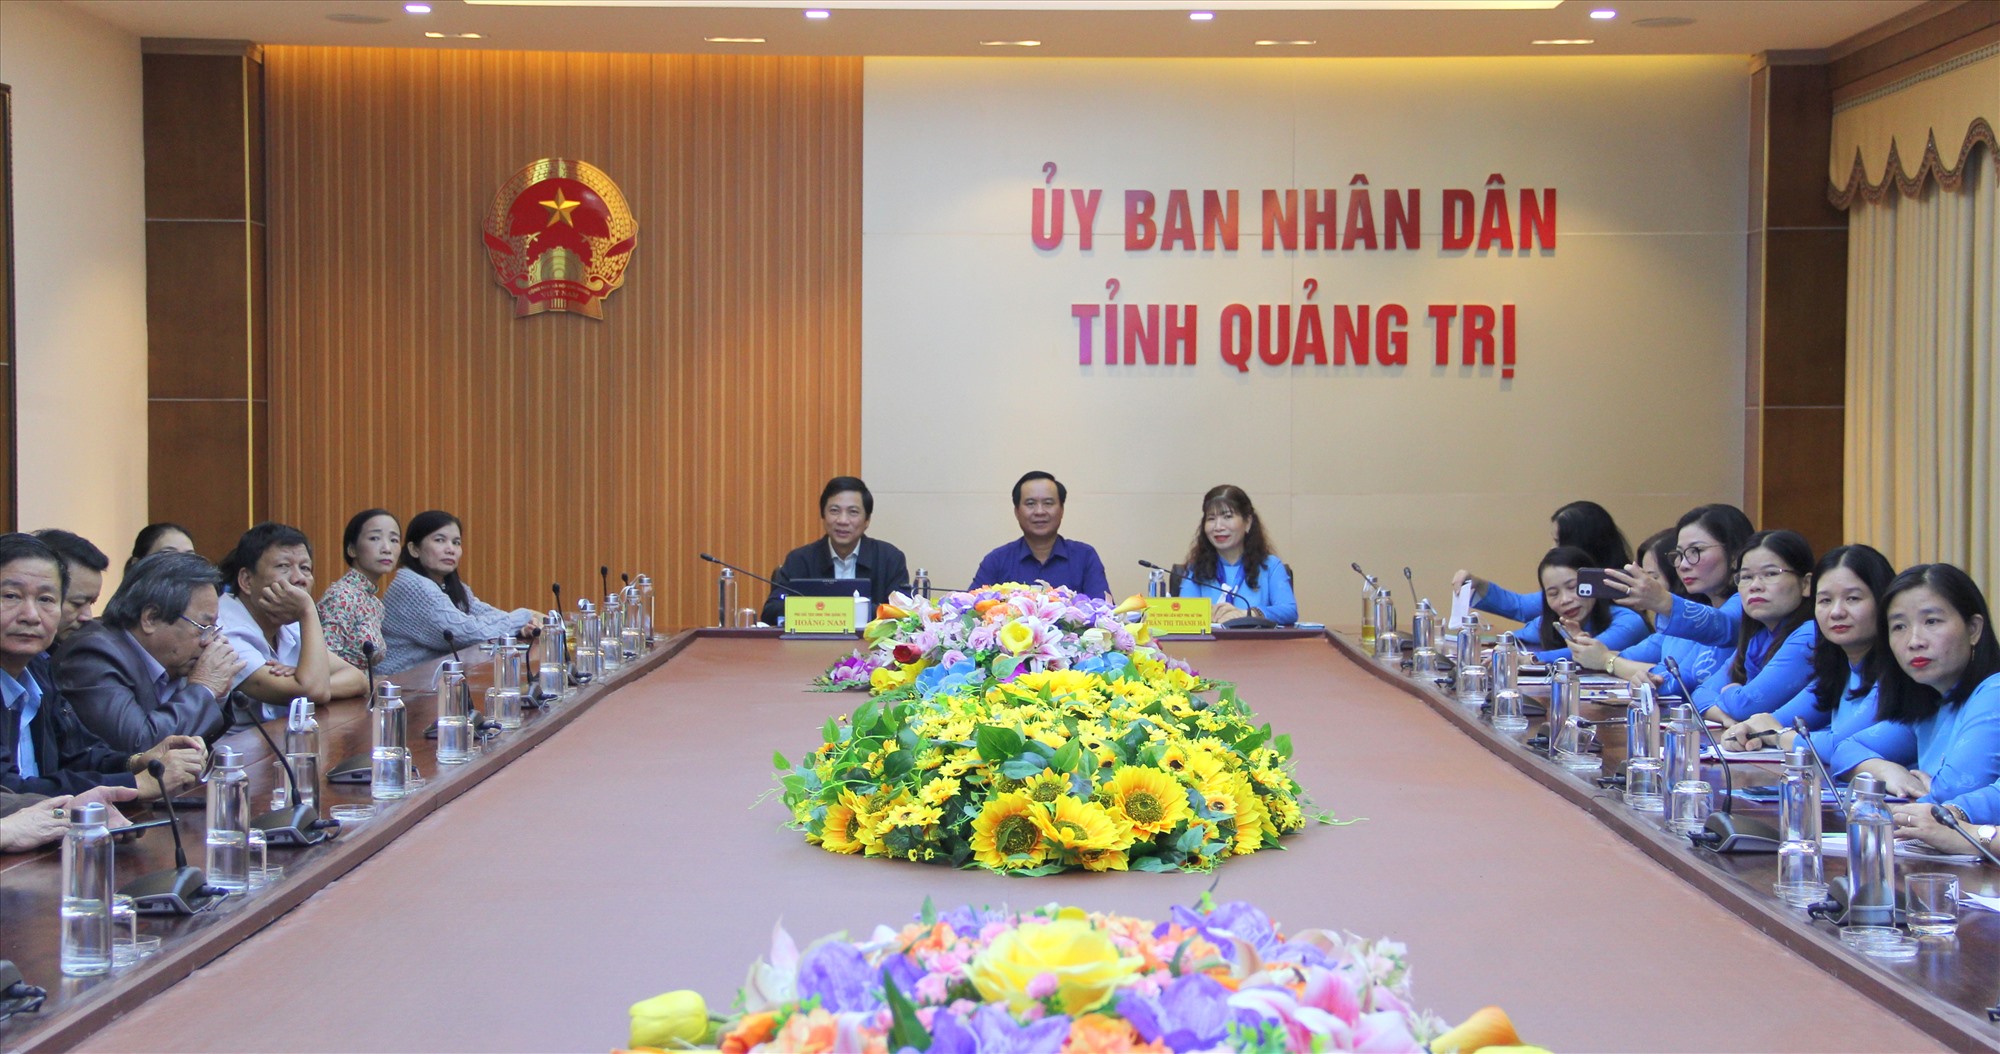 Chủ tịch UBND tỉnh Võ Văn Hưng và Phó Chủ tịch UBND tỉnh Hoàng Nam chủ trì hội nghị tại điểm cầu Quảng Trị - Ảnh: MĐ